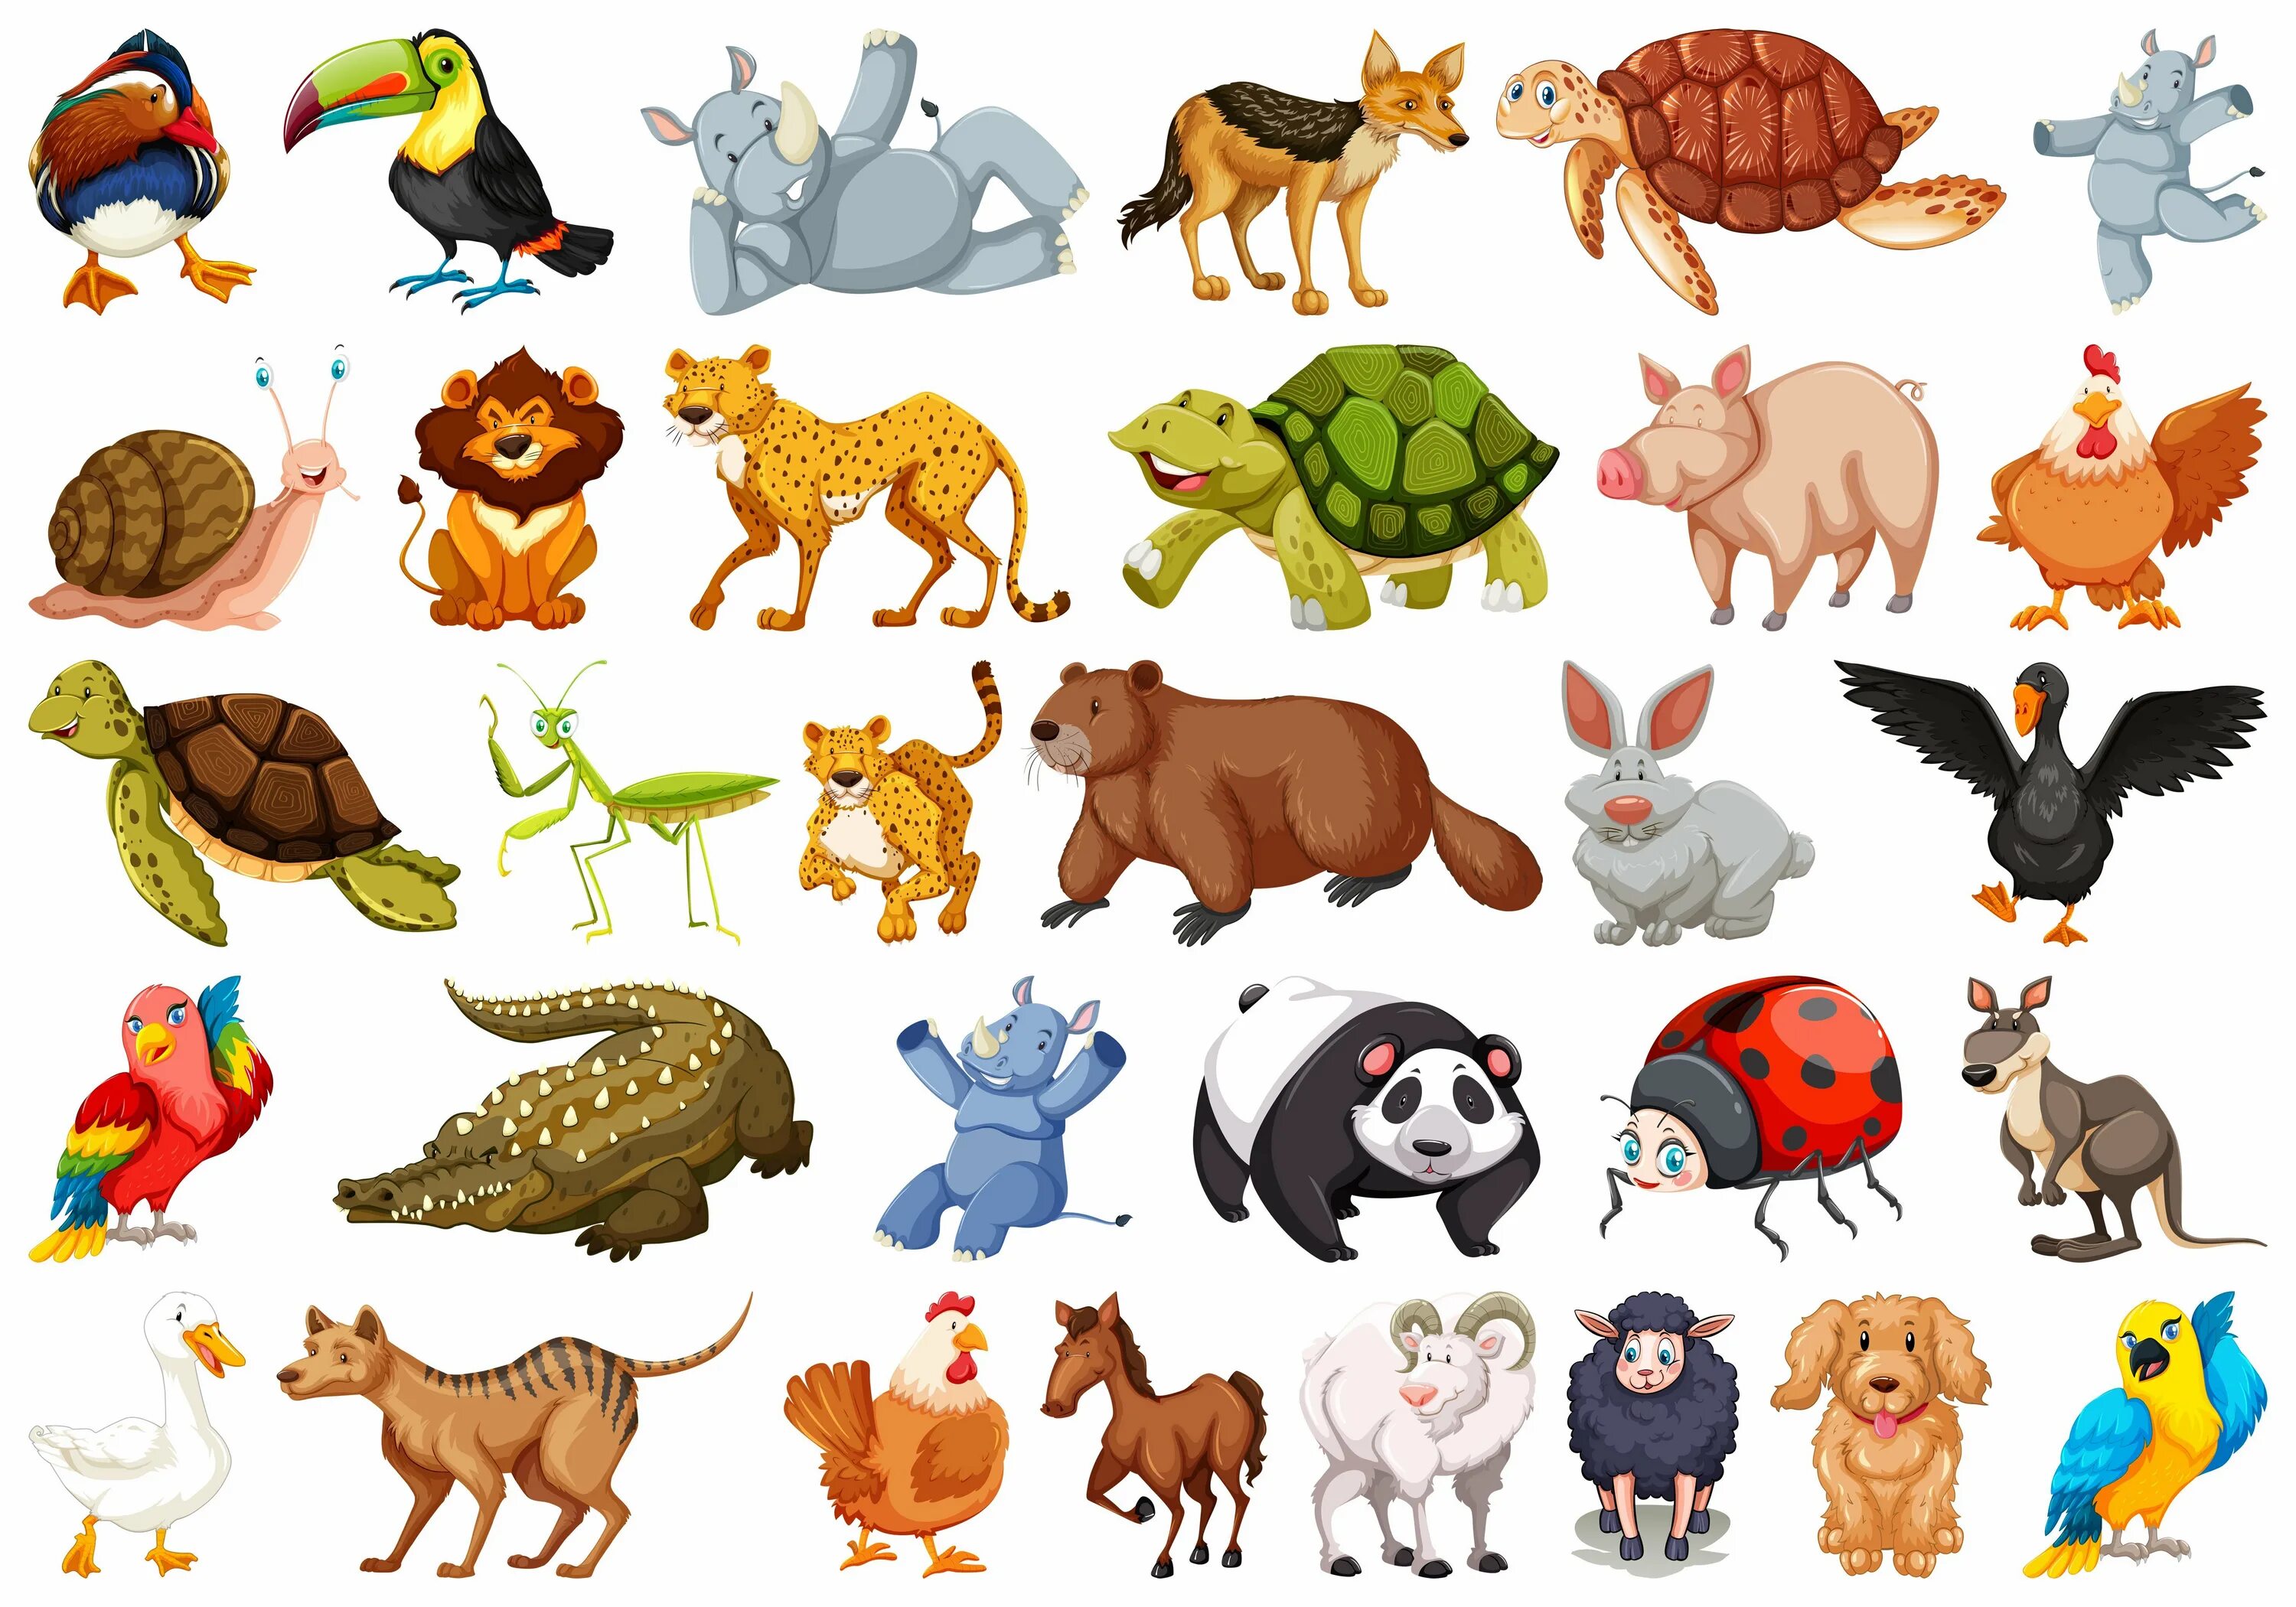 Мультяшные животные для детей. Иллюстрации животных для детей. Мультяшные животные в одном стиле. Много животных на одной картинке. Животное для ребенка 9 лет